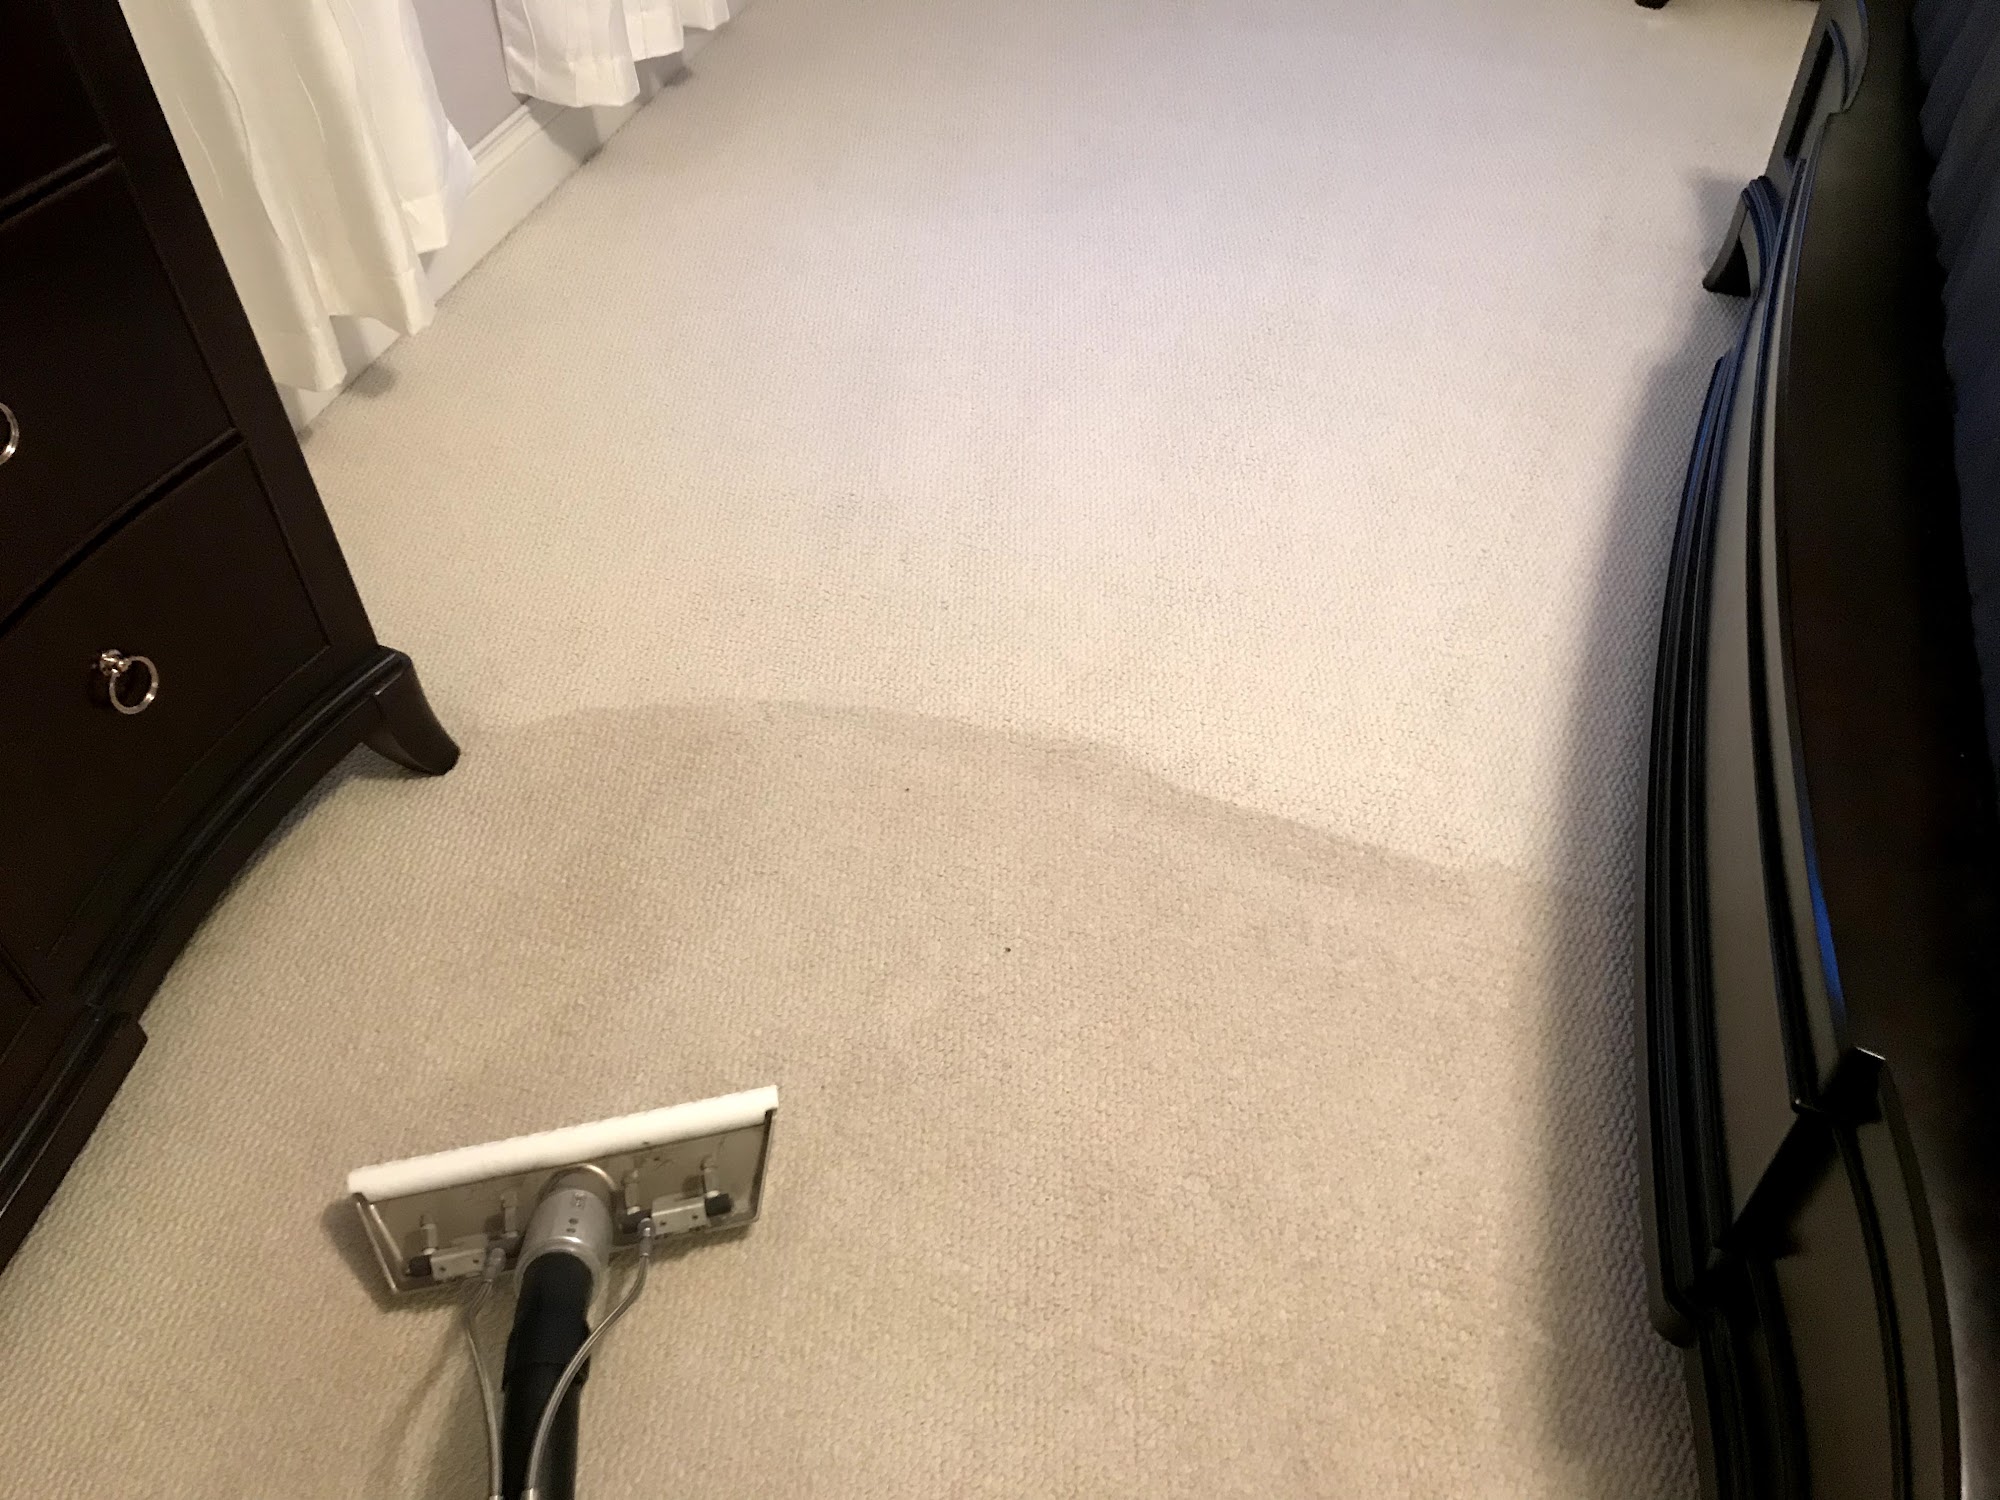 J&S Carpet Cleaning 268 Lake Dr, Hamilton Massachusetts 01982